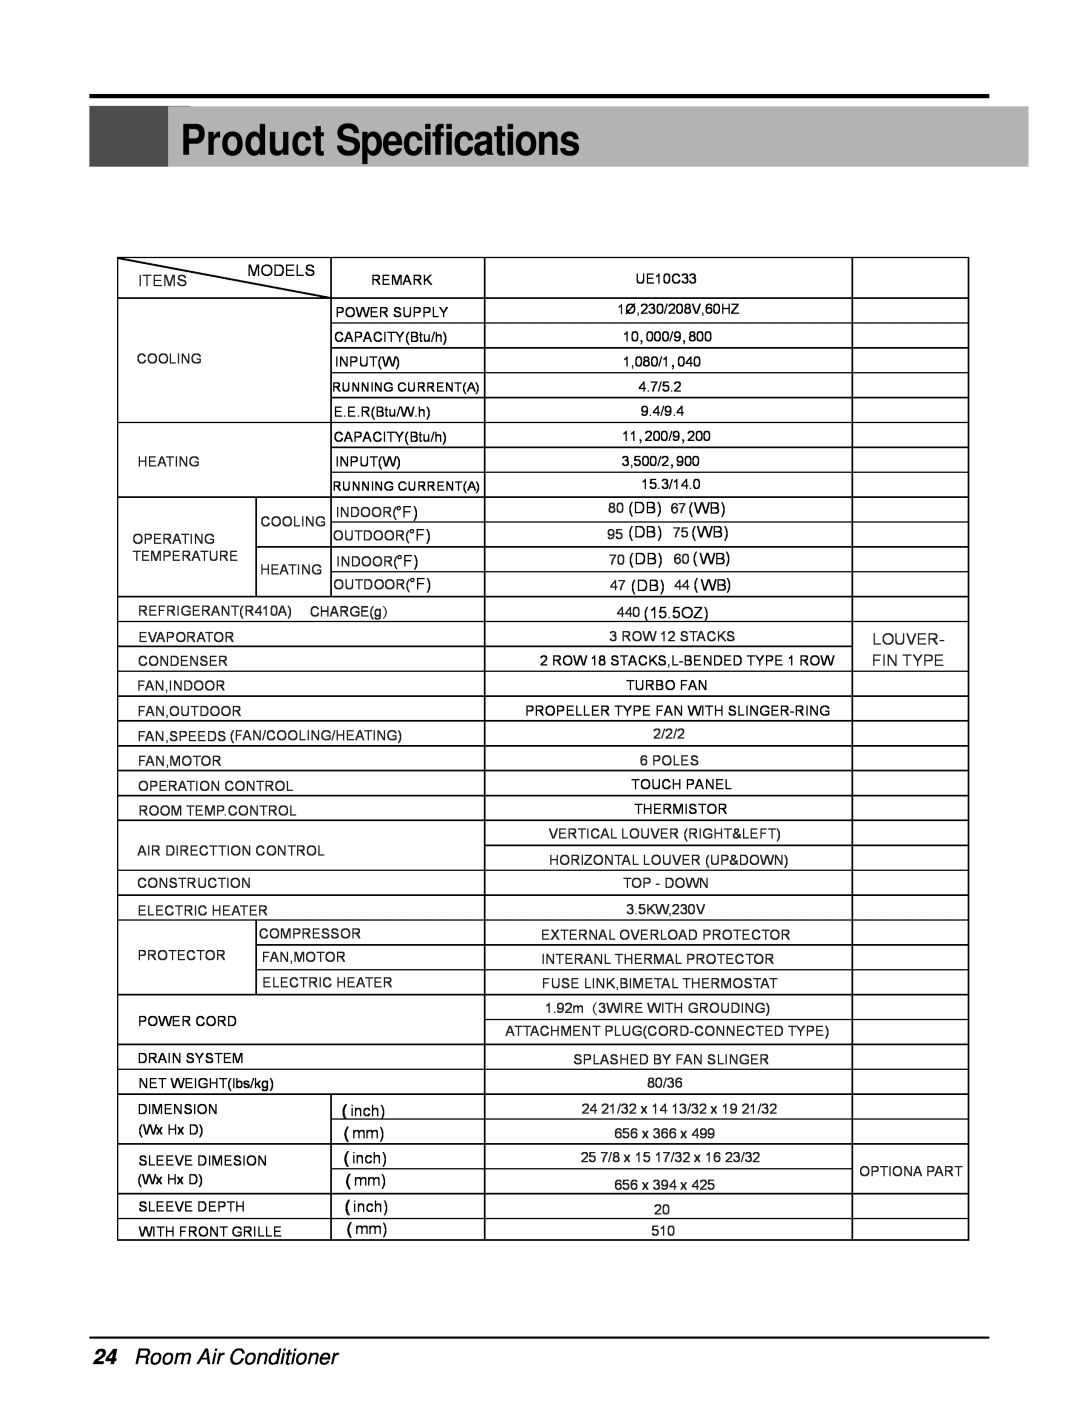 Friedrich UE12C33, UE10C33, UE08C13 manual 24Room Air Conditioner, Product Specifications 